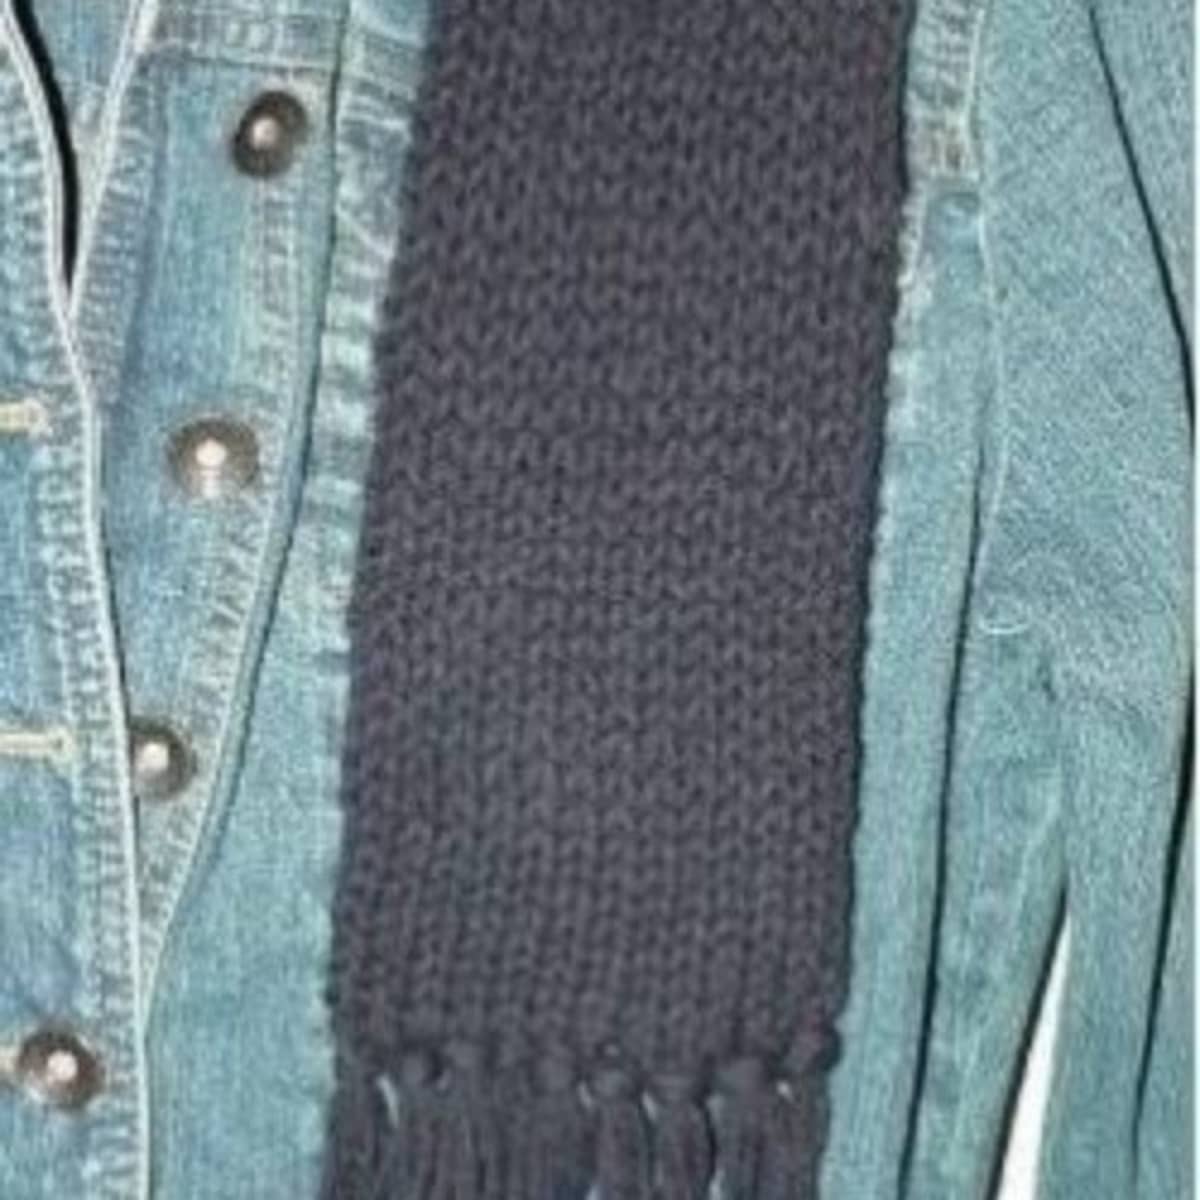 Knotty Scarf -- a loom knit pattern